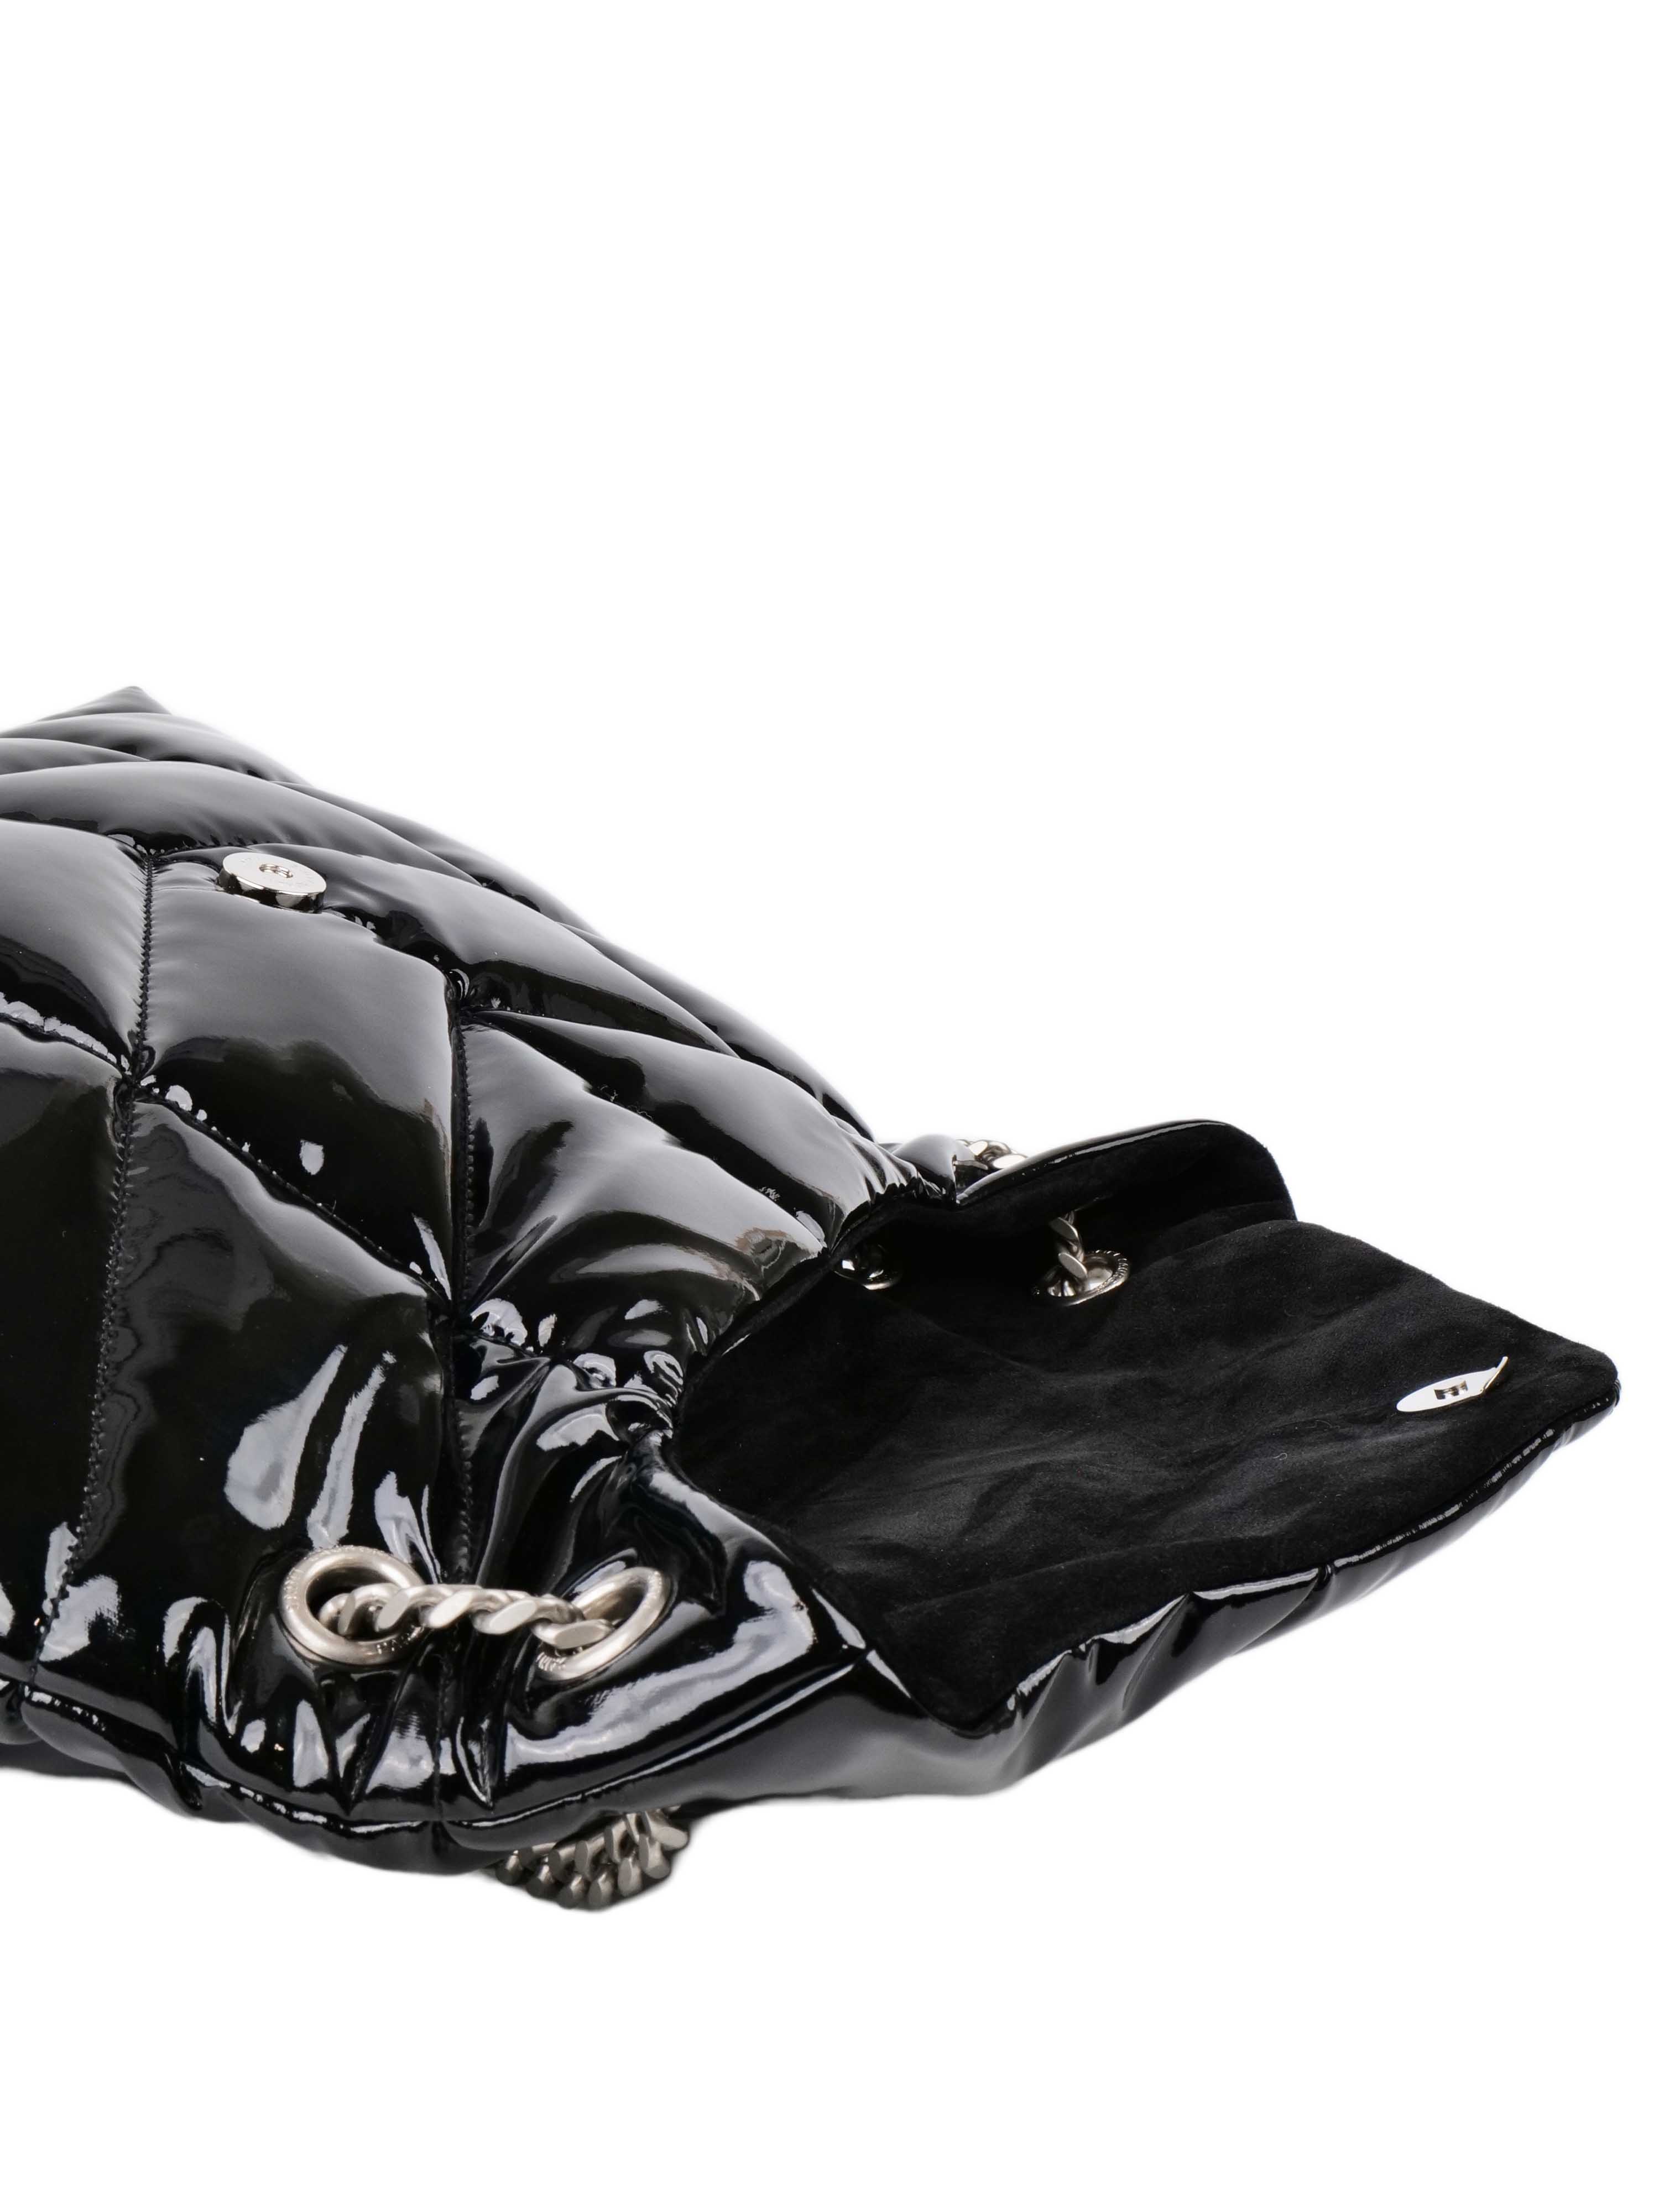 Saint Laurent Medium Black Patent Puffer Bag SHW.